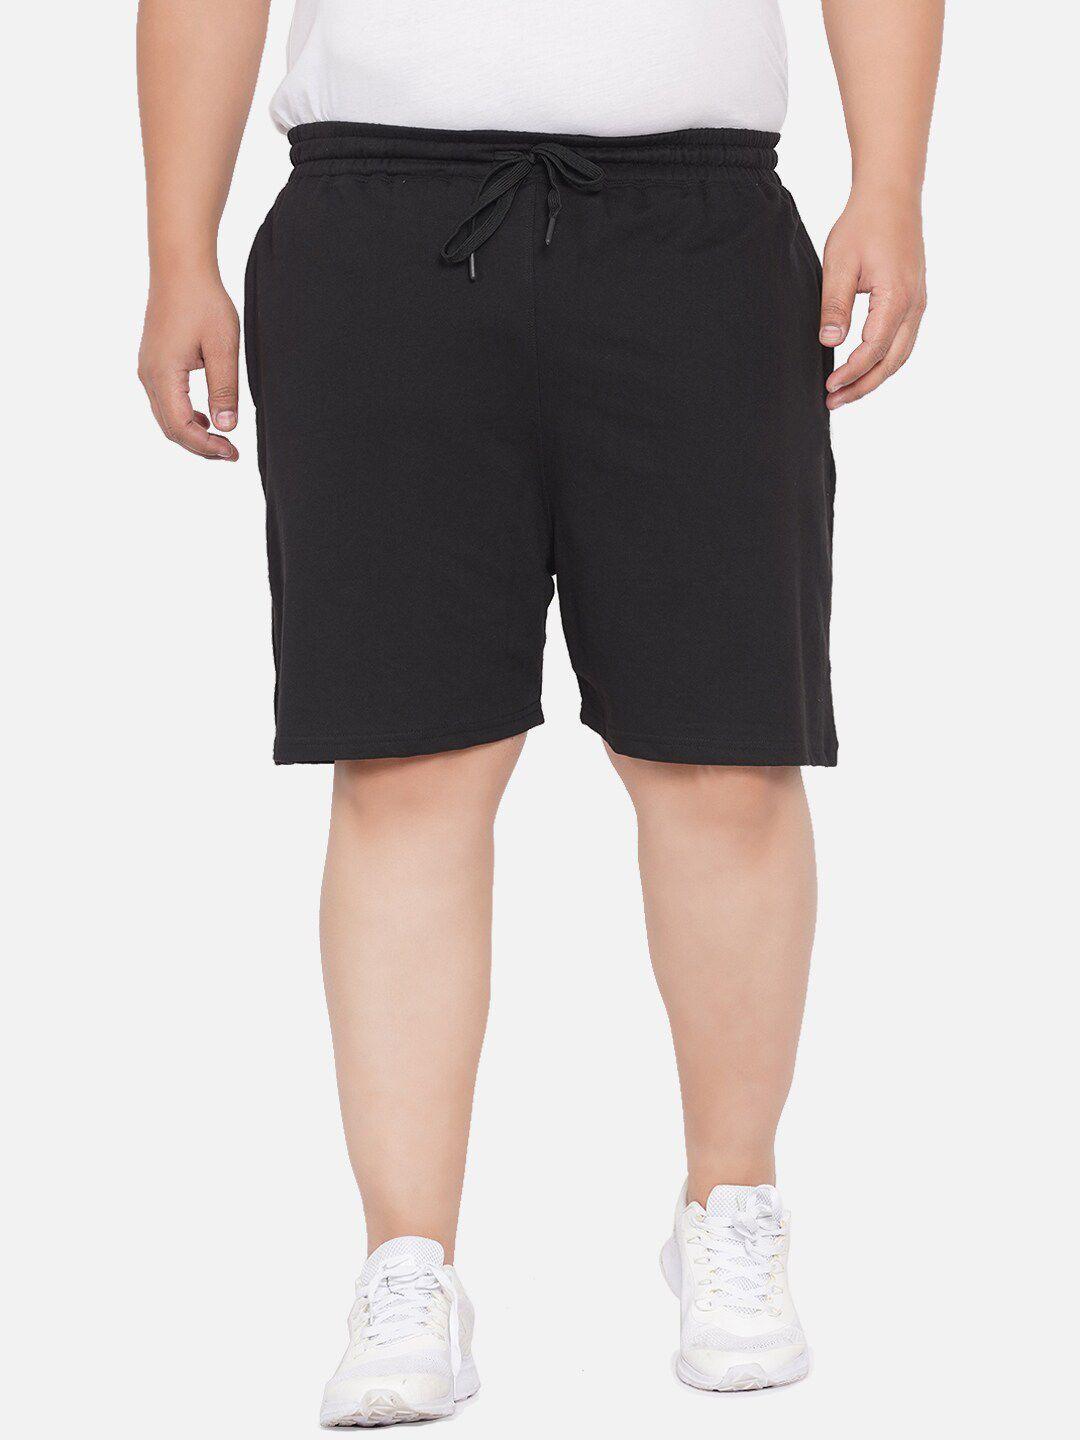 santonio-plus-size-men-mid-rise-pure-cotton-shorts